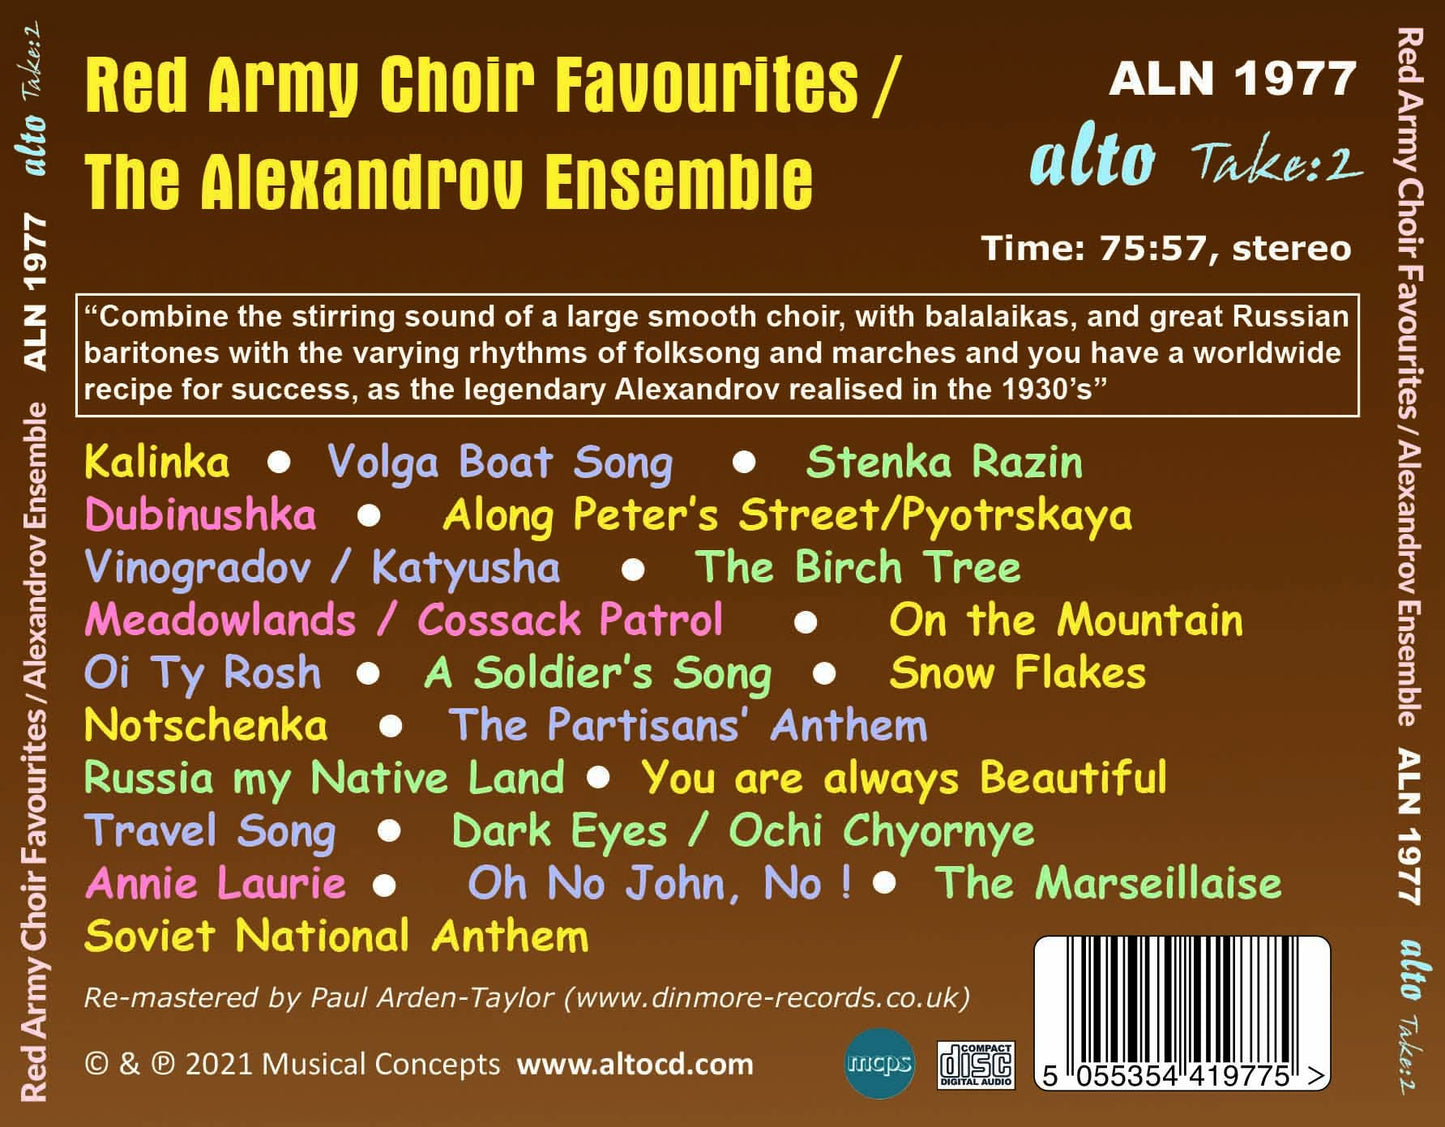 Red Army Choir Favourites - Alexandrov Ensemble